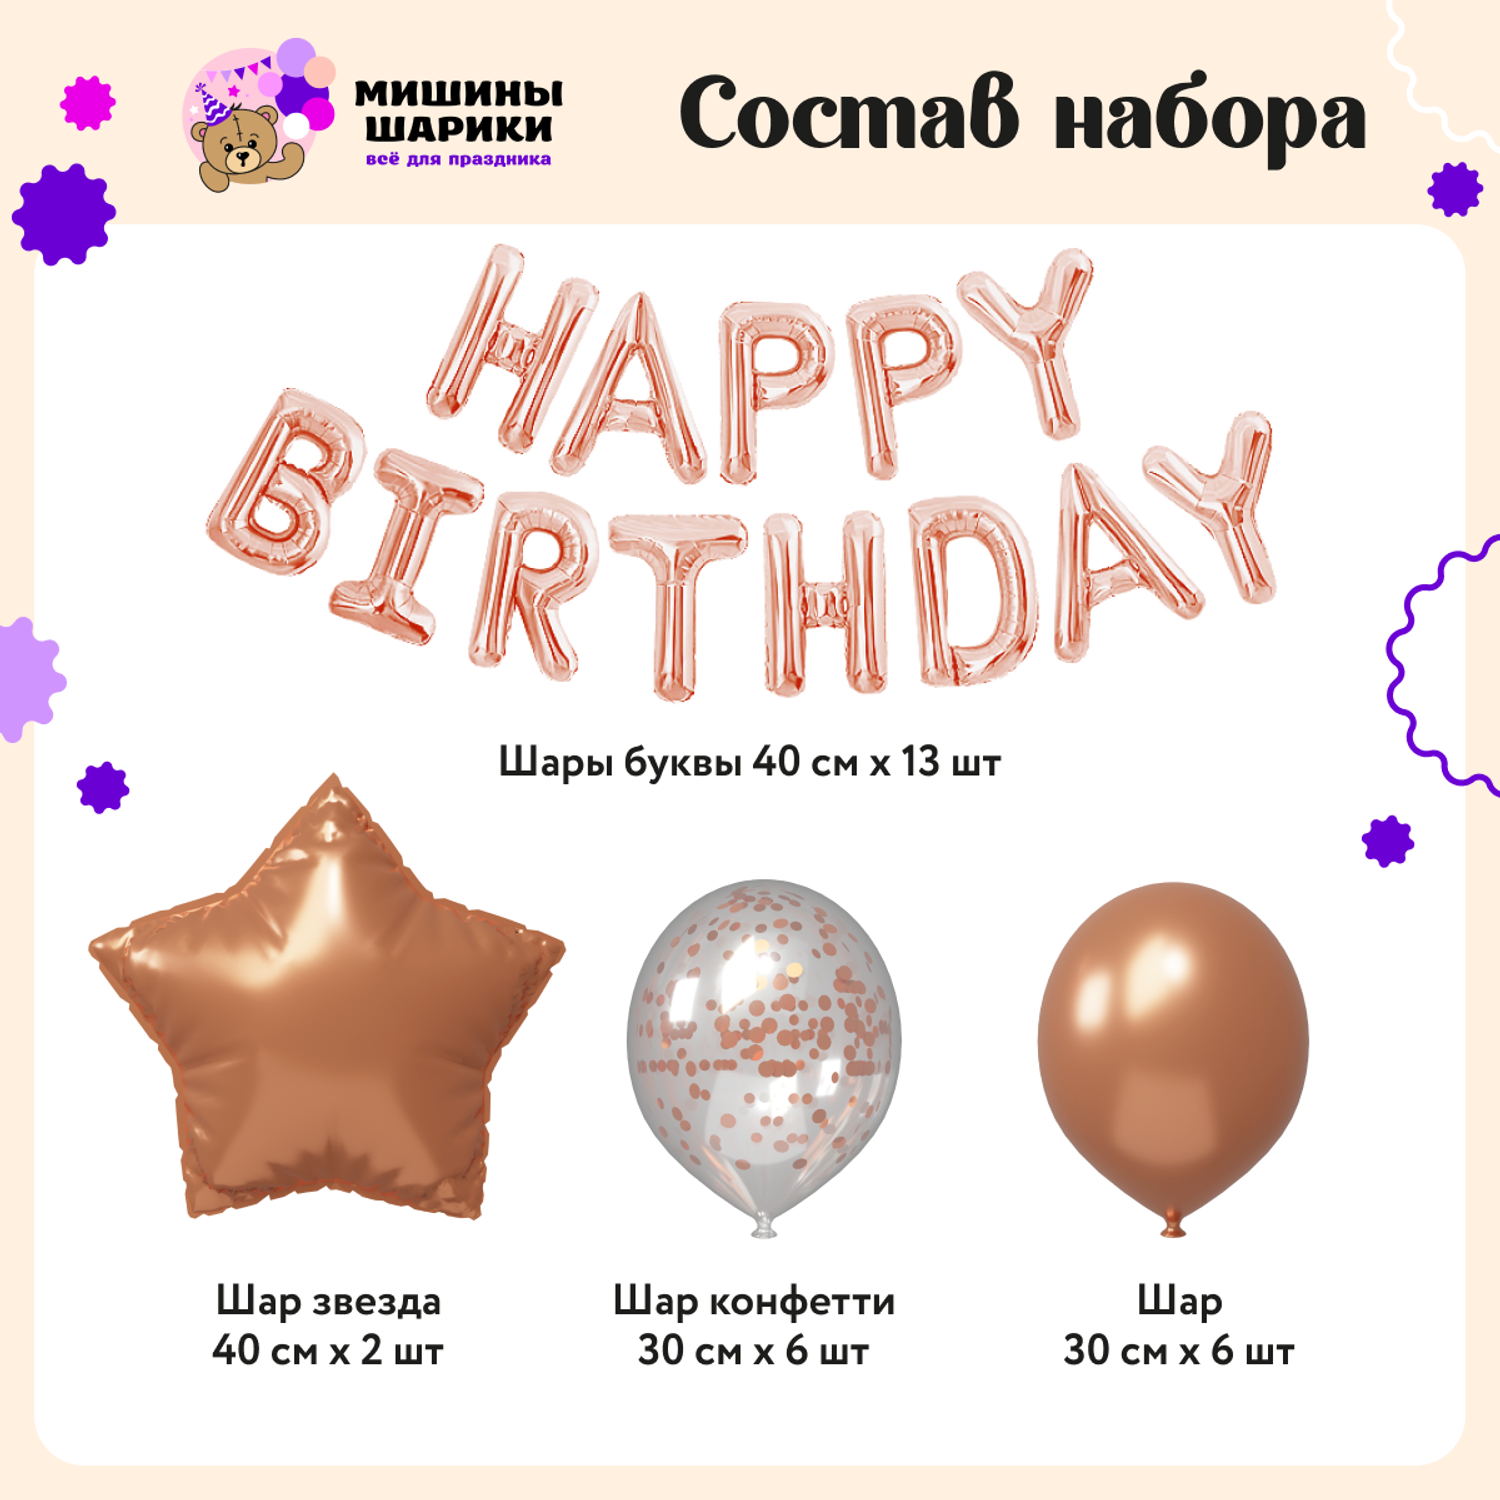 Воздушные шары Happy Birthday Мишины шарики для фотозоны на день рождения латексные и фольгированные - фото 2